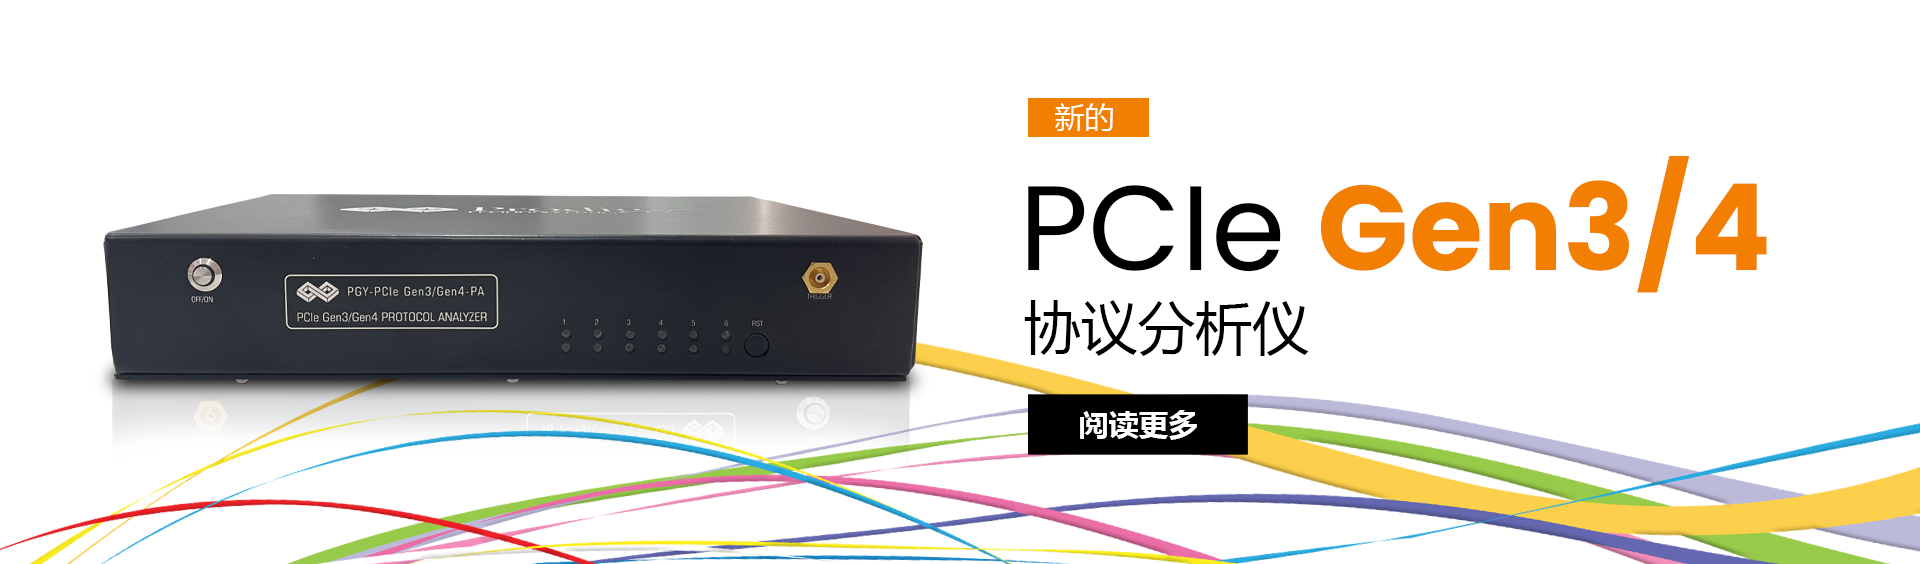 PCIe 协议分析仪